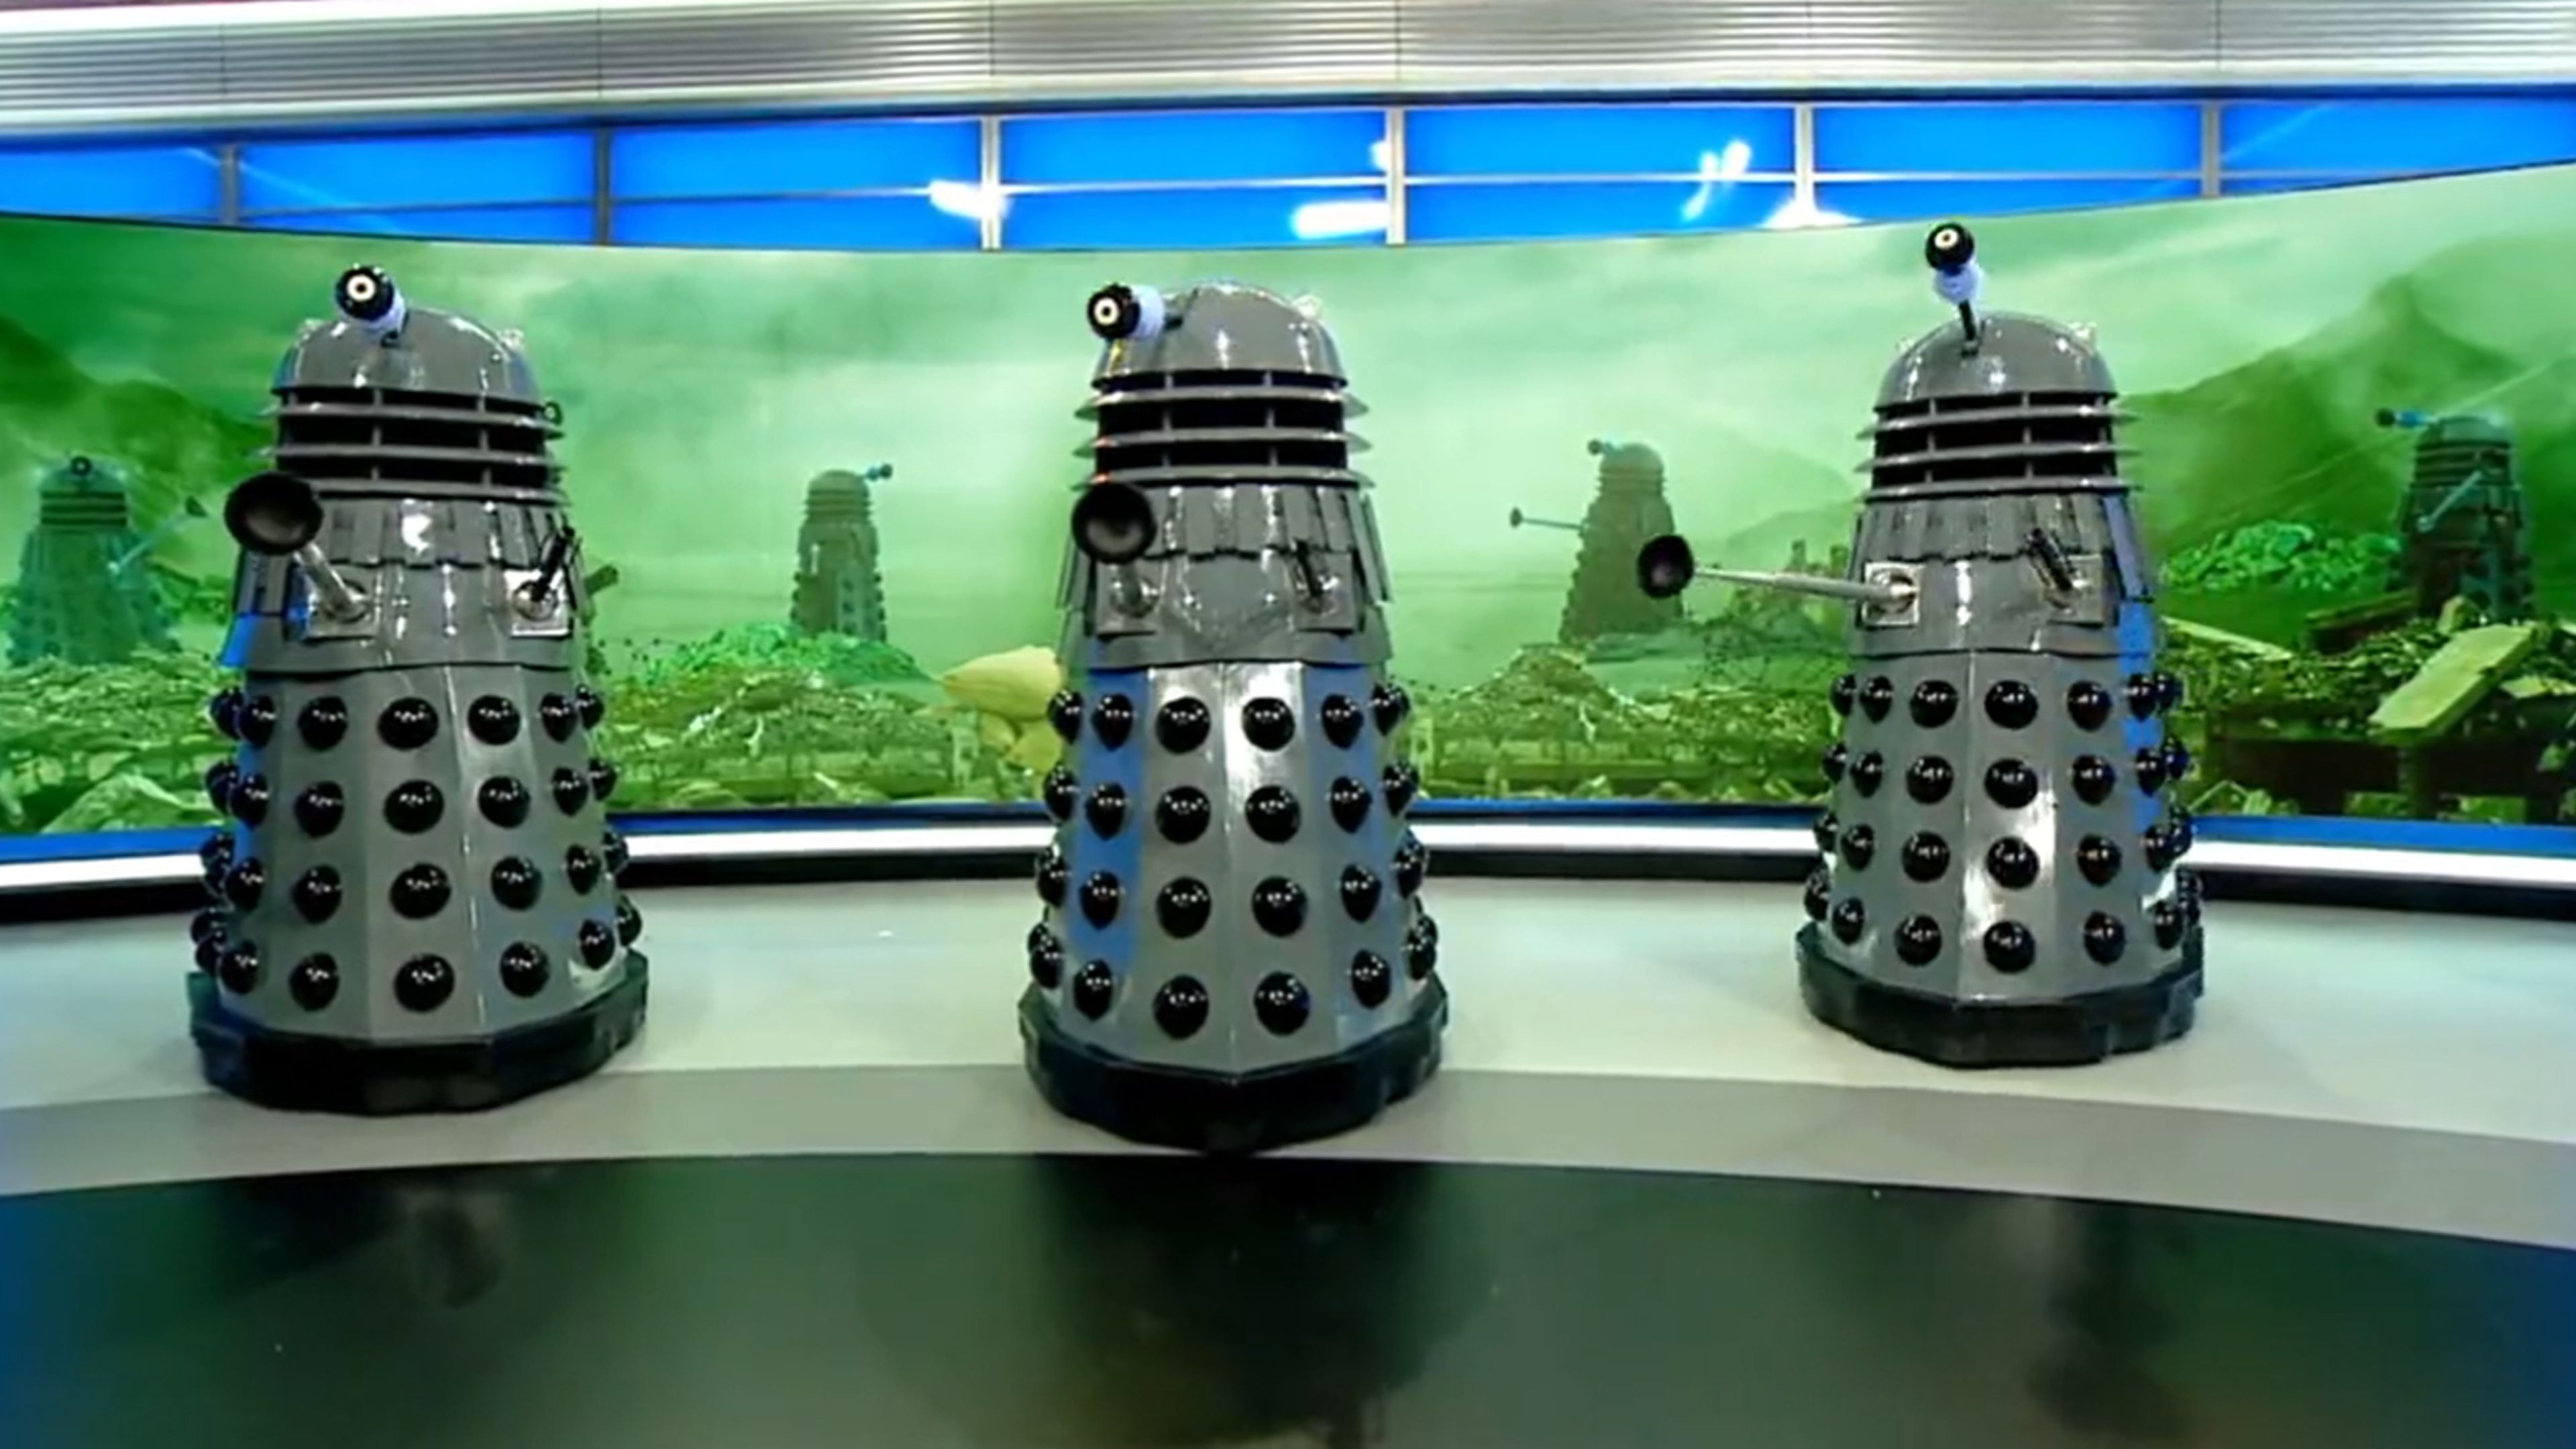 Doctor Who arranca la promo de su 60 aniversario con una invasión Dalek en directo